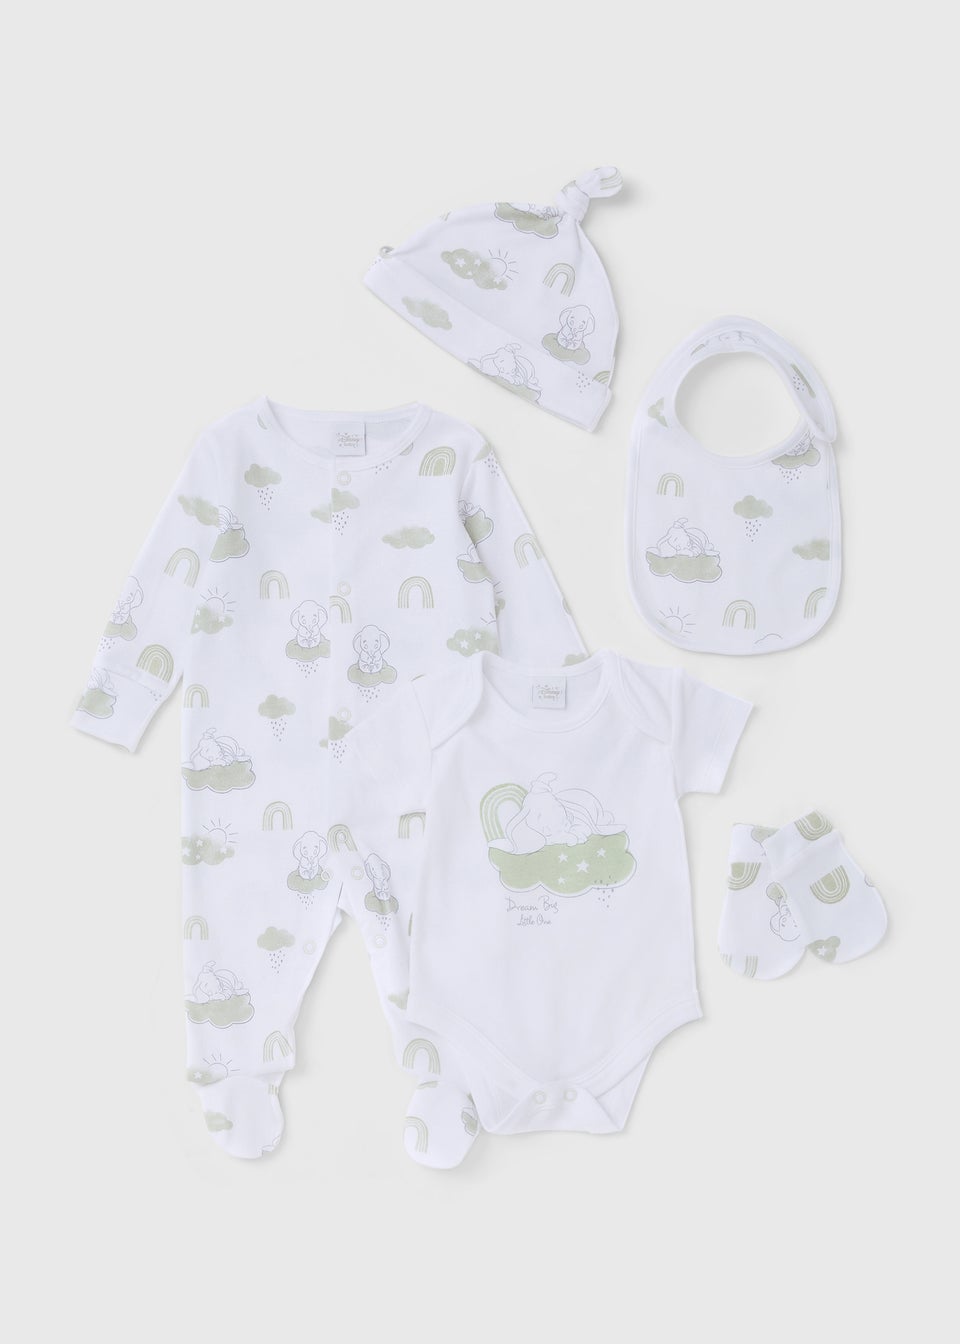 Комплект из 5 пижам Disney Dumbo (для малышей до 6 месяцев), белый